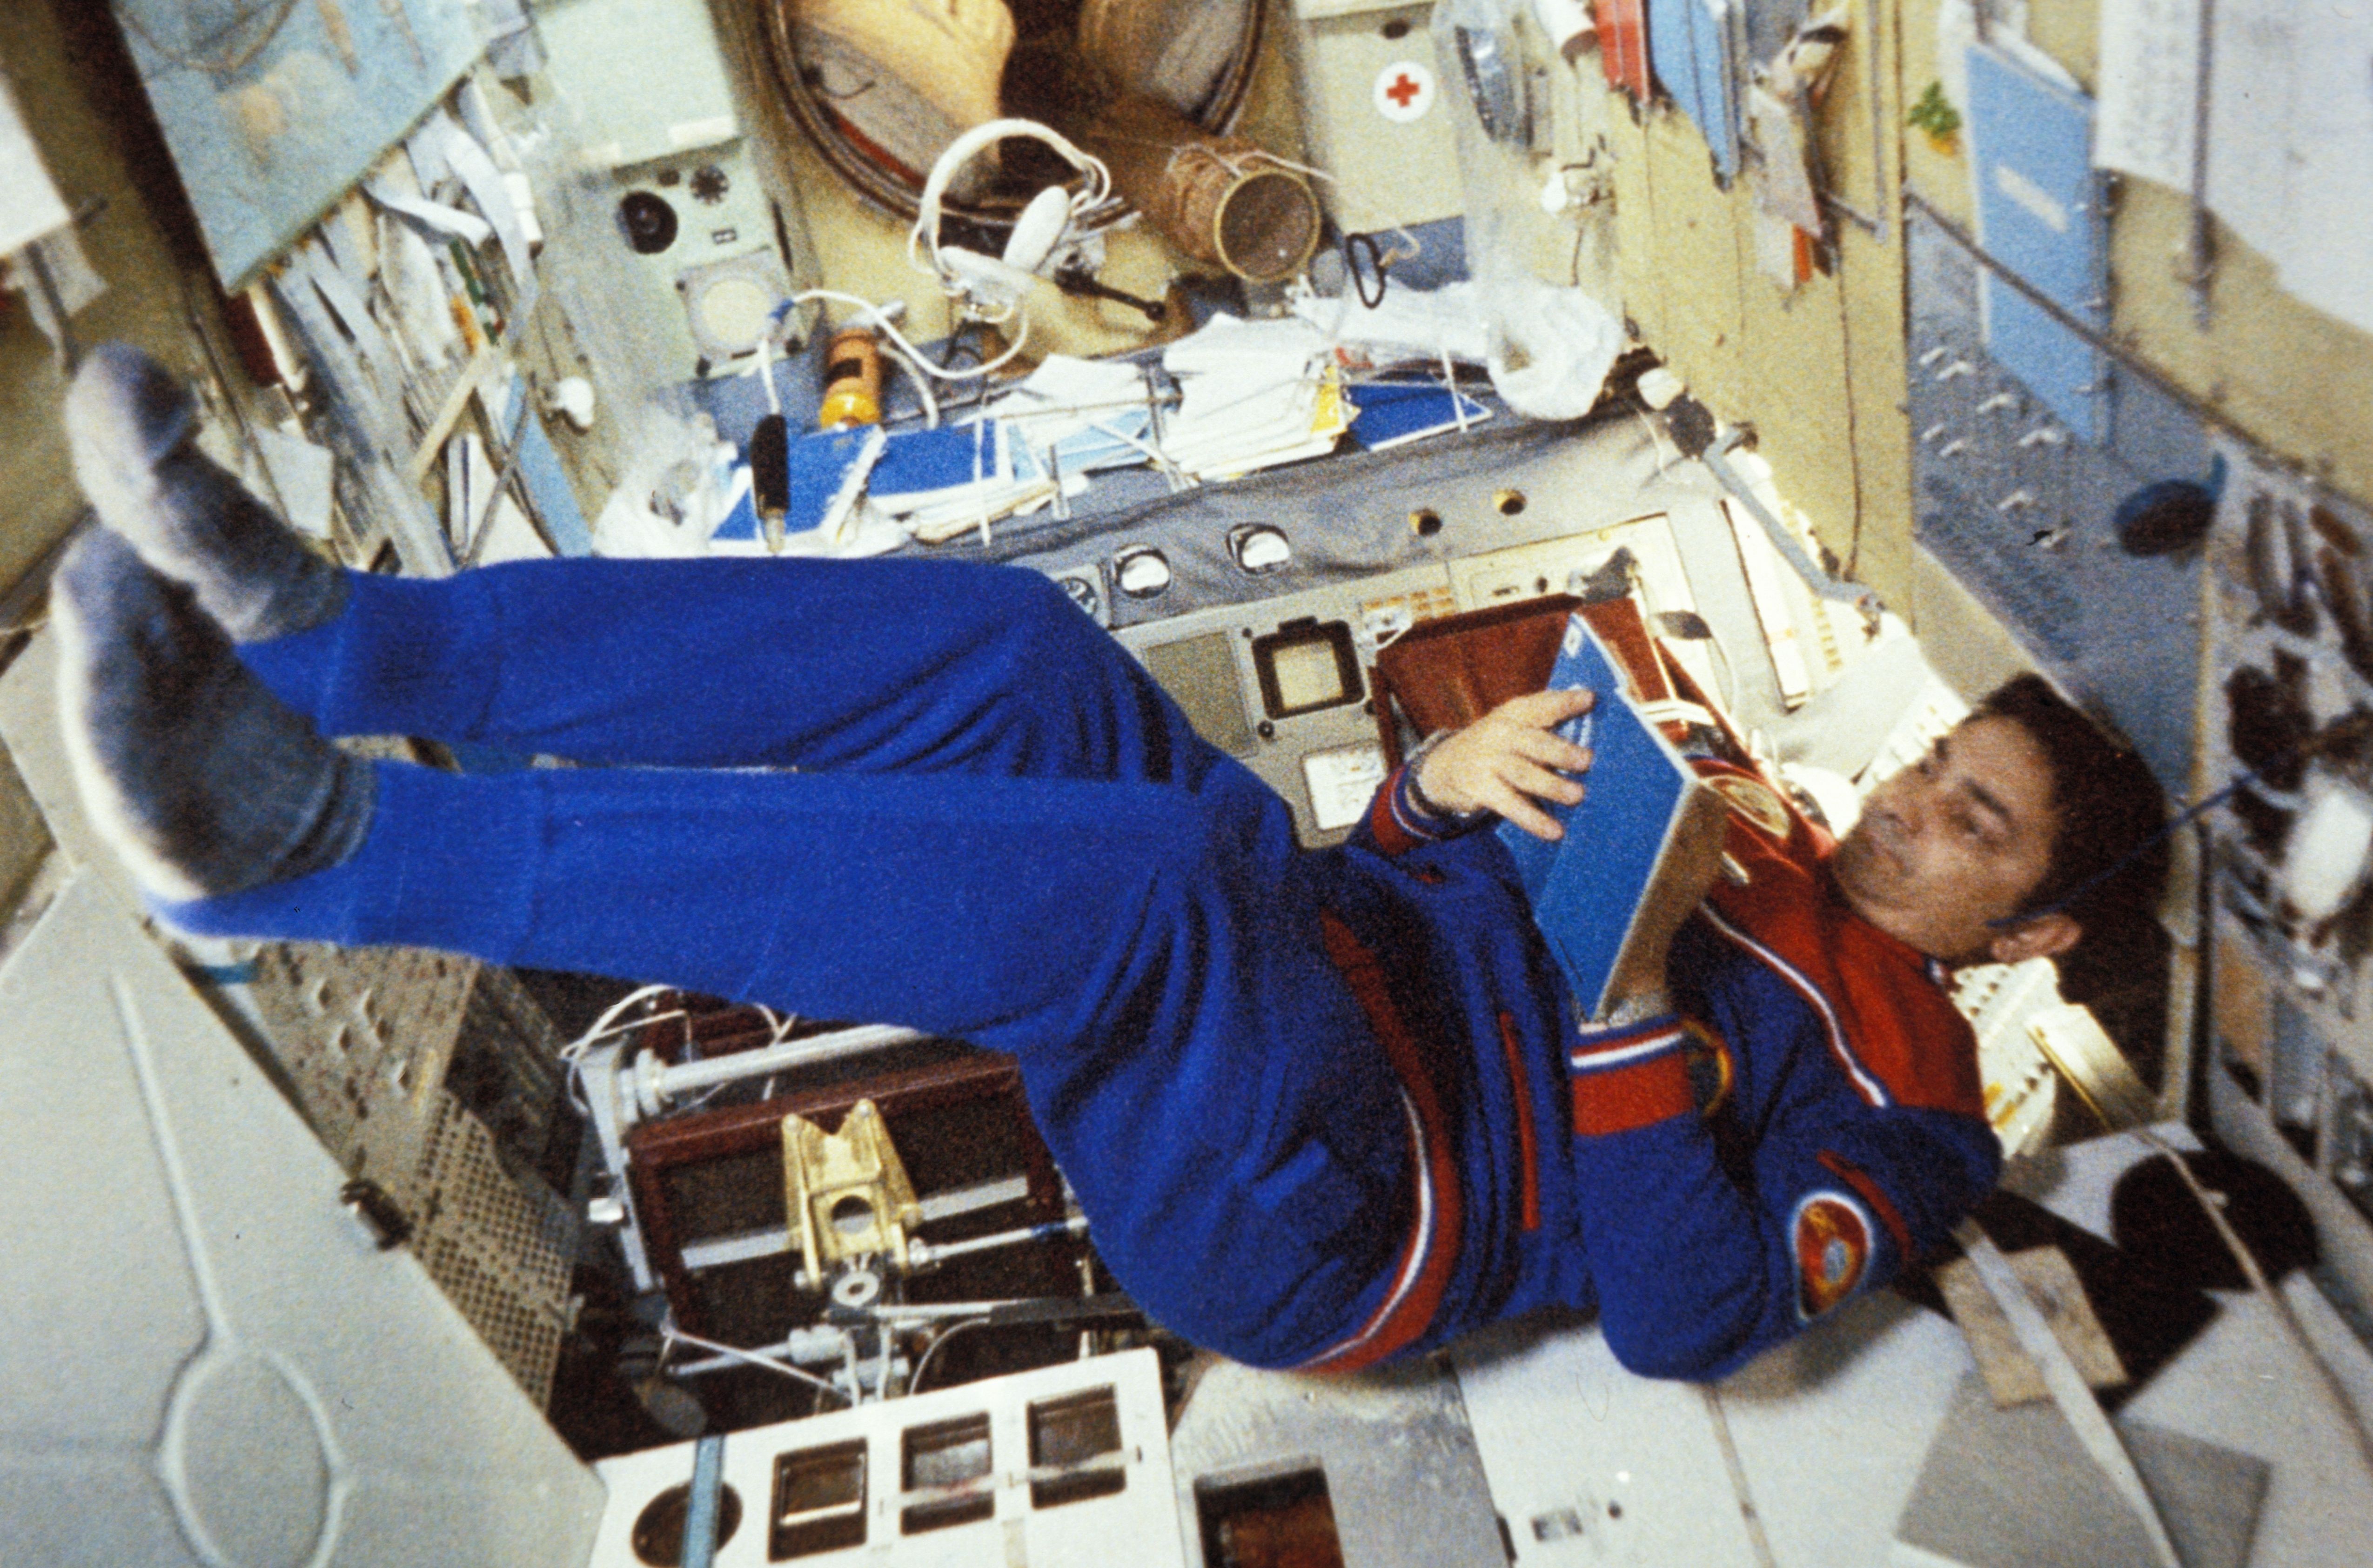 Valery bykovsky aboard the salyut 6 space station.